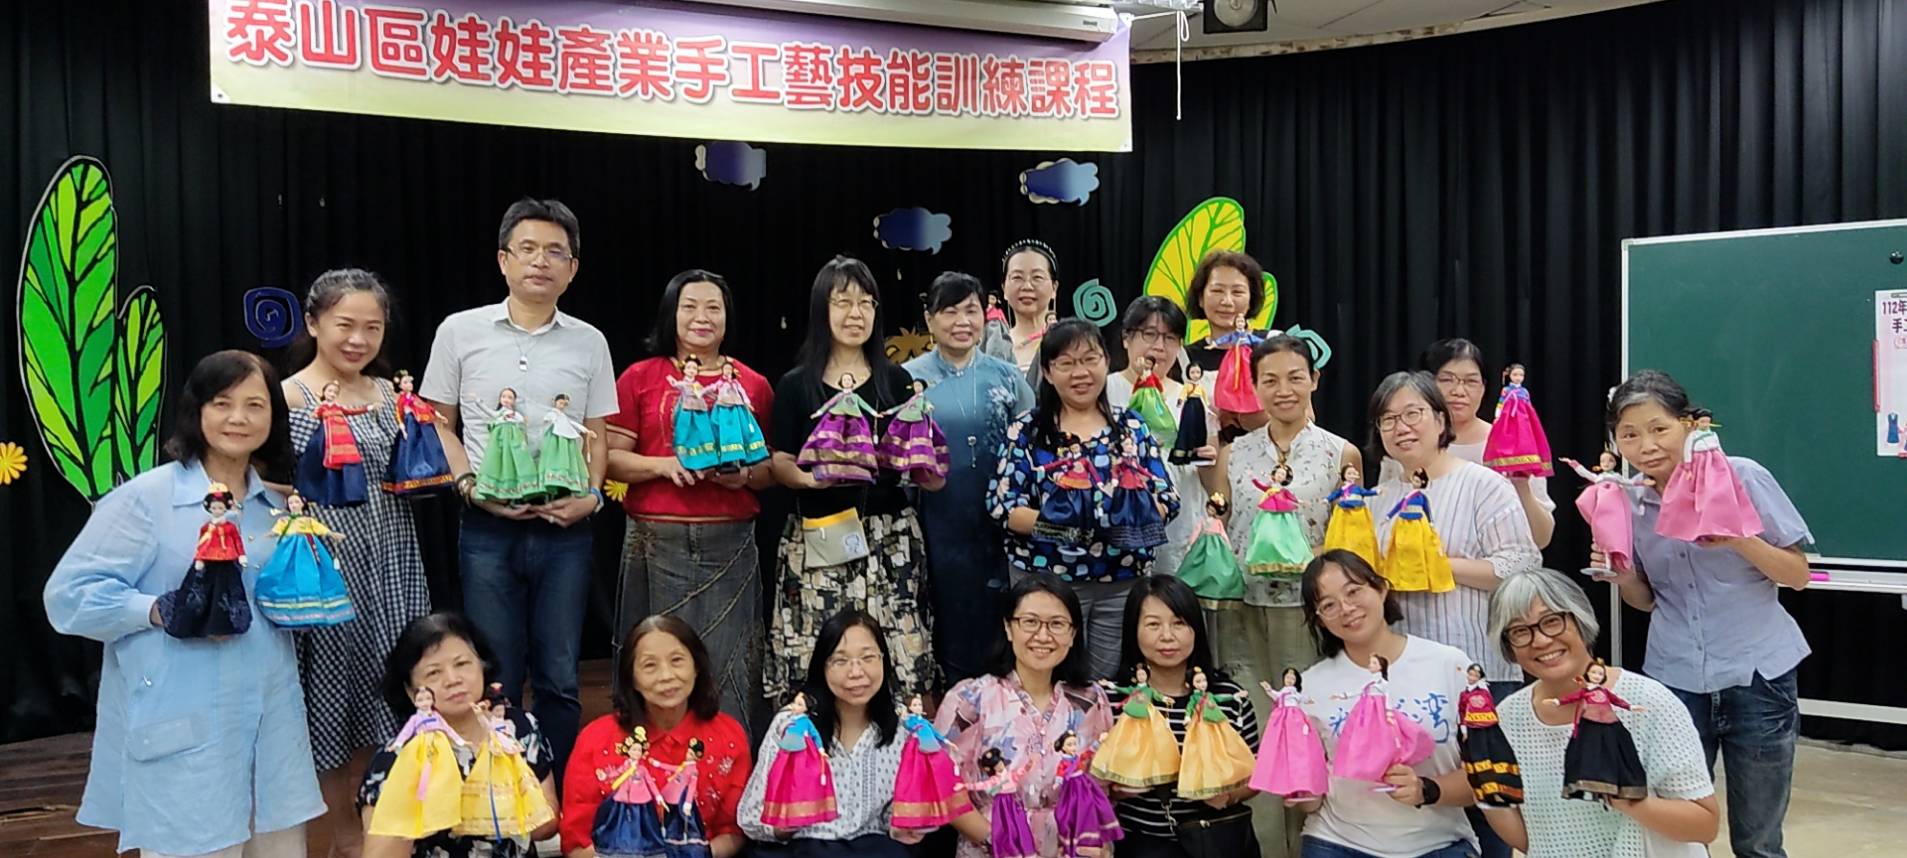 112年泰山區娃娃產業文化館手工藝技能訓練成果展-19